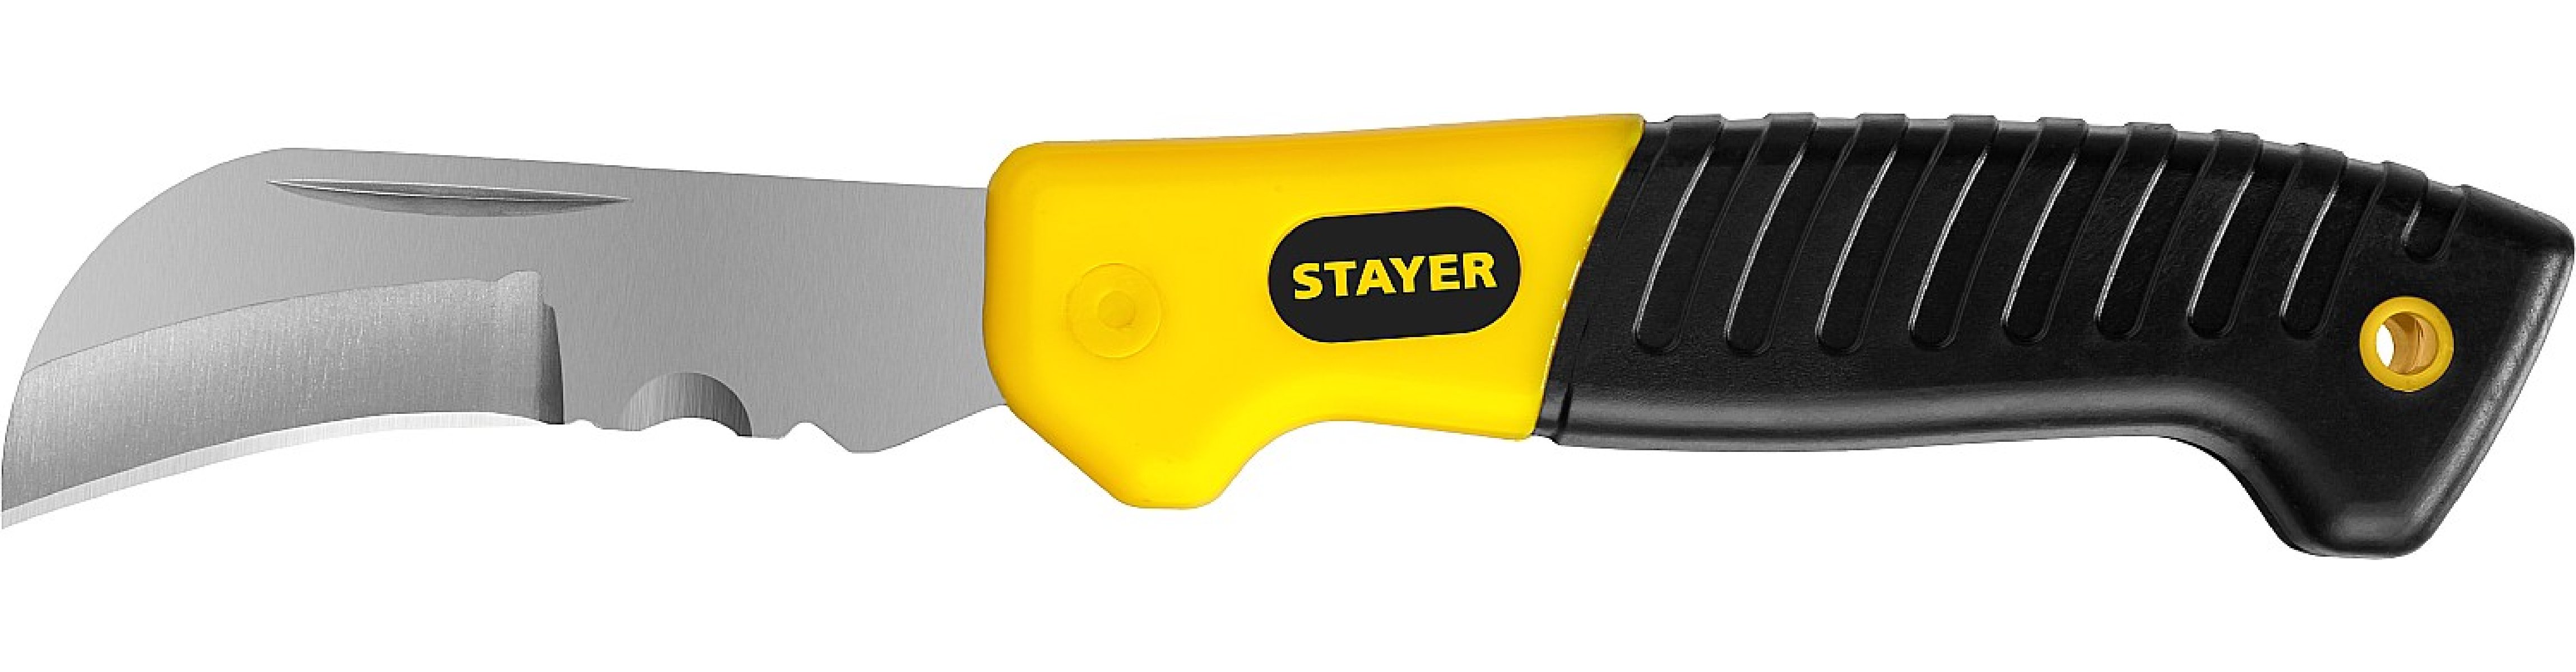      STAYER (45409)